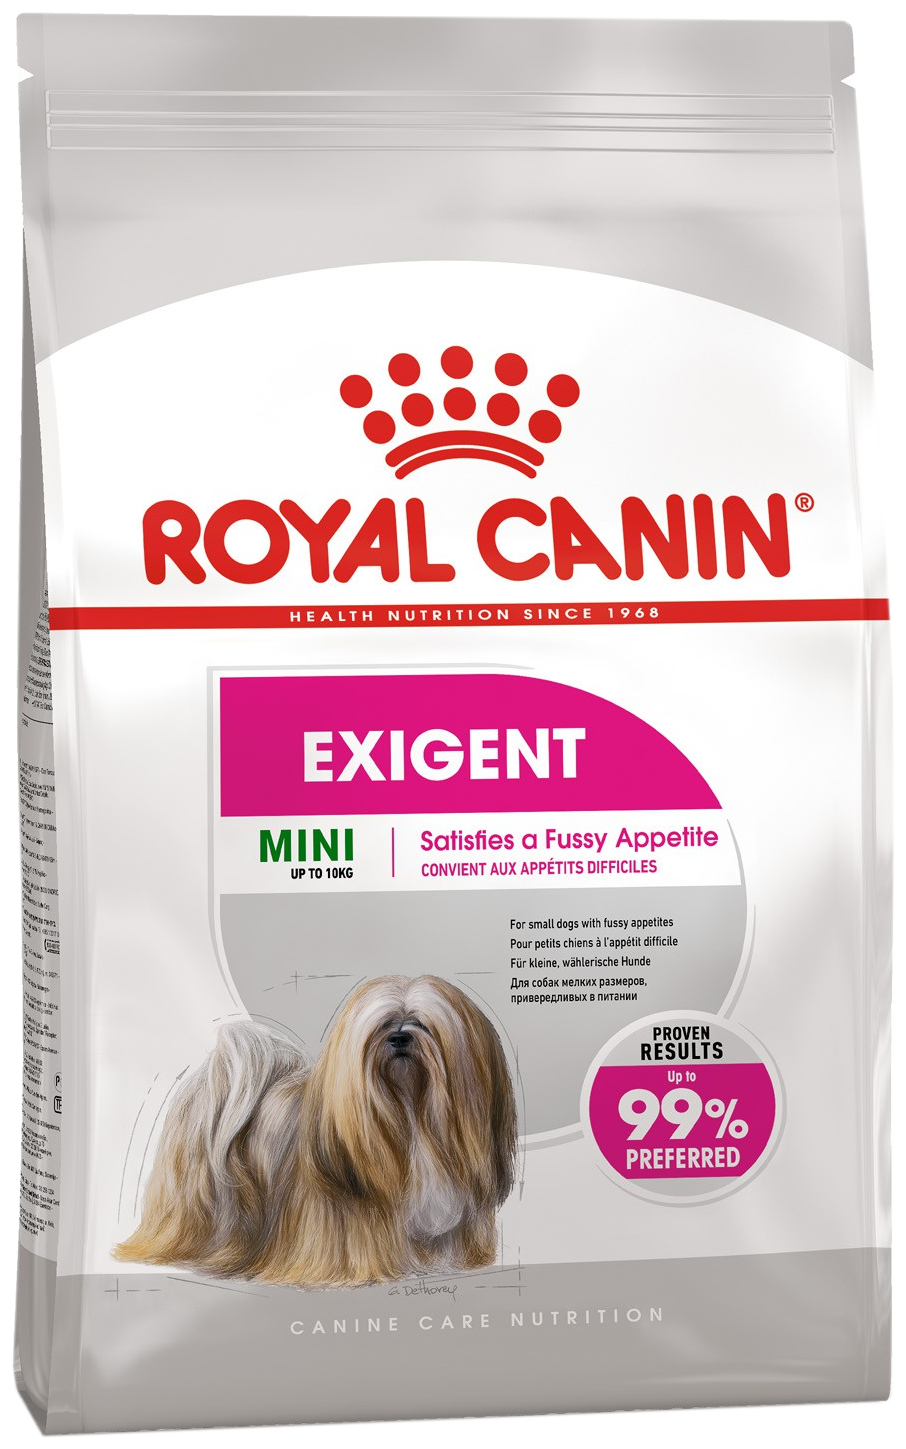 Сухой корм Royal Canin для взрослых собак мелких размеров (весом от 1 до 10 кг), привередливых в питании, от 10 месяцев до 12 лет 1 уп. х 1 шт. х 1 кг